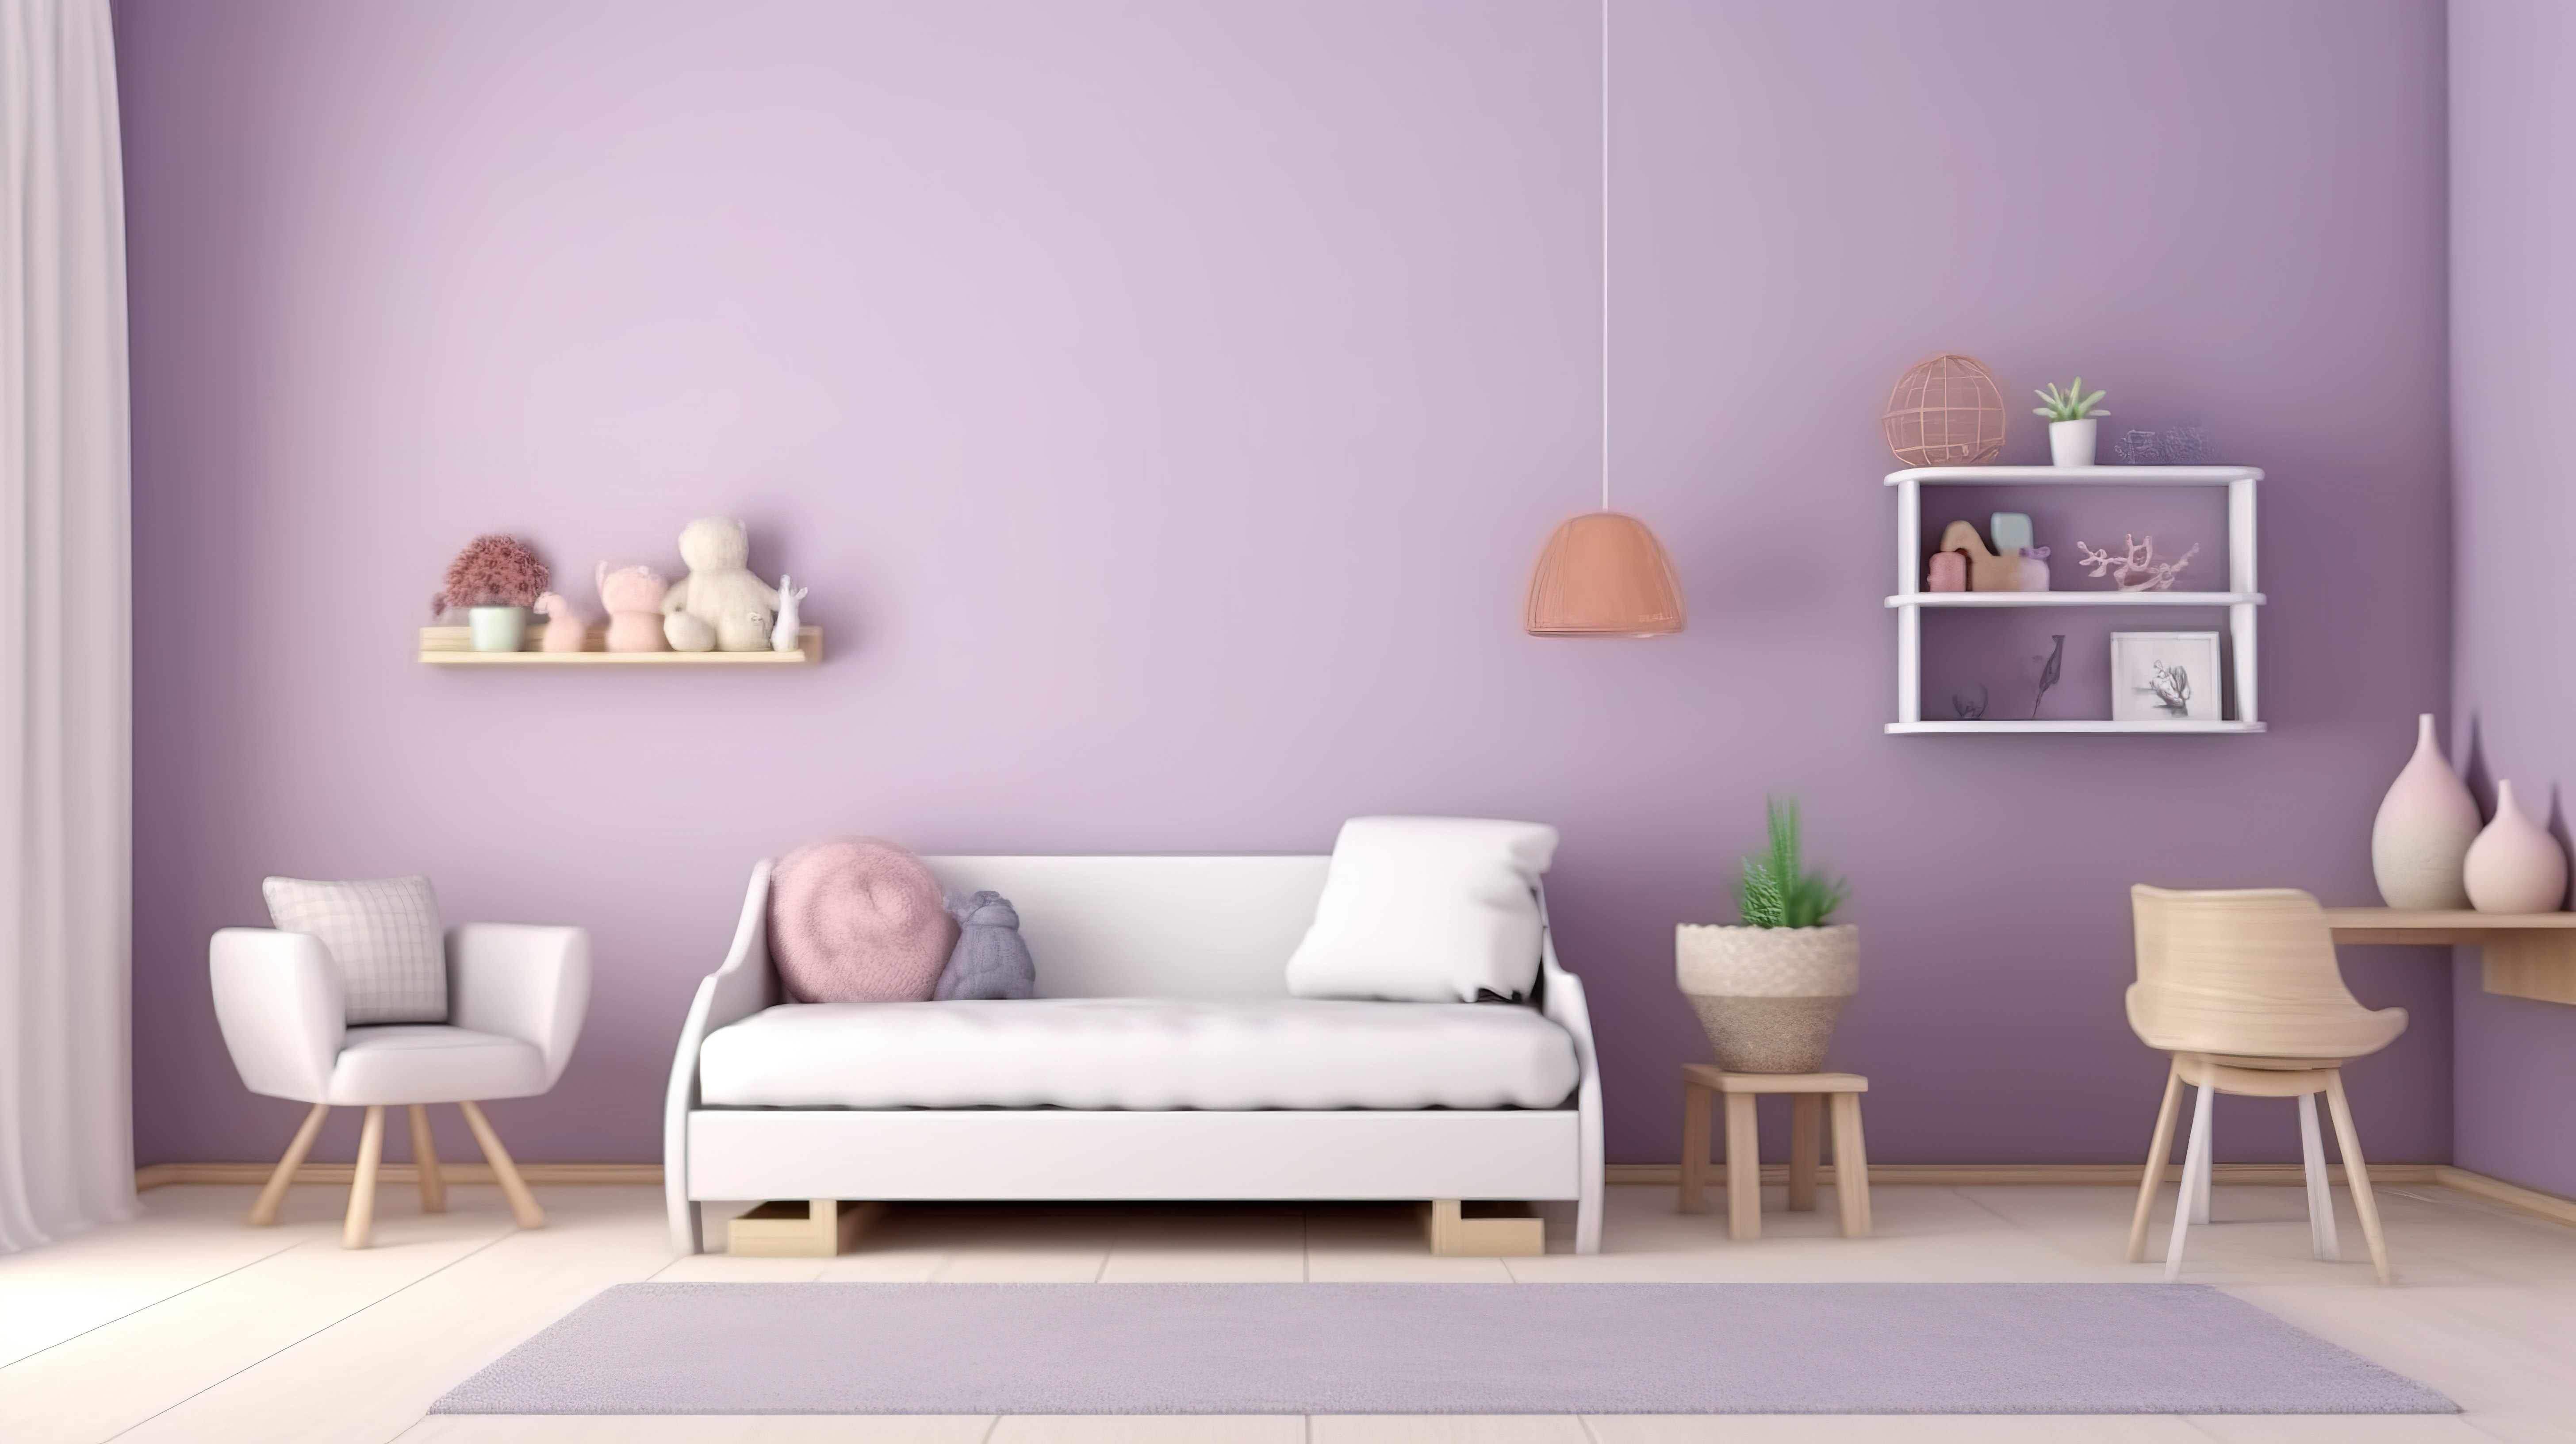 紫色墙壁和白色家具以令人惊叹的 3D 渲染装饰幼儿房间的内部景观图片